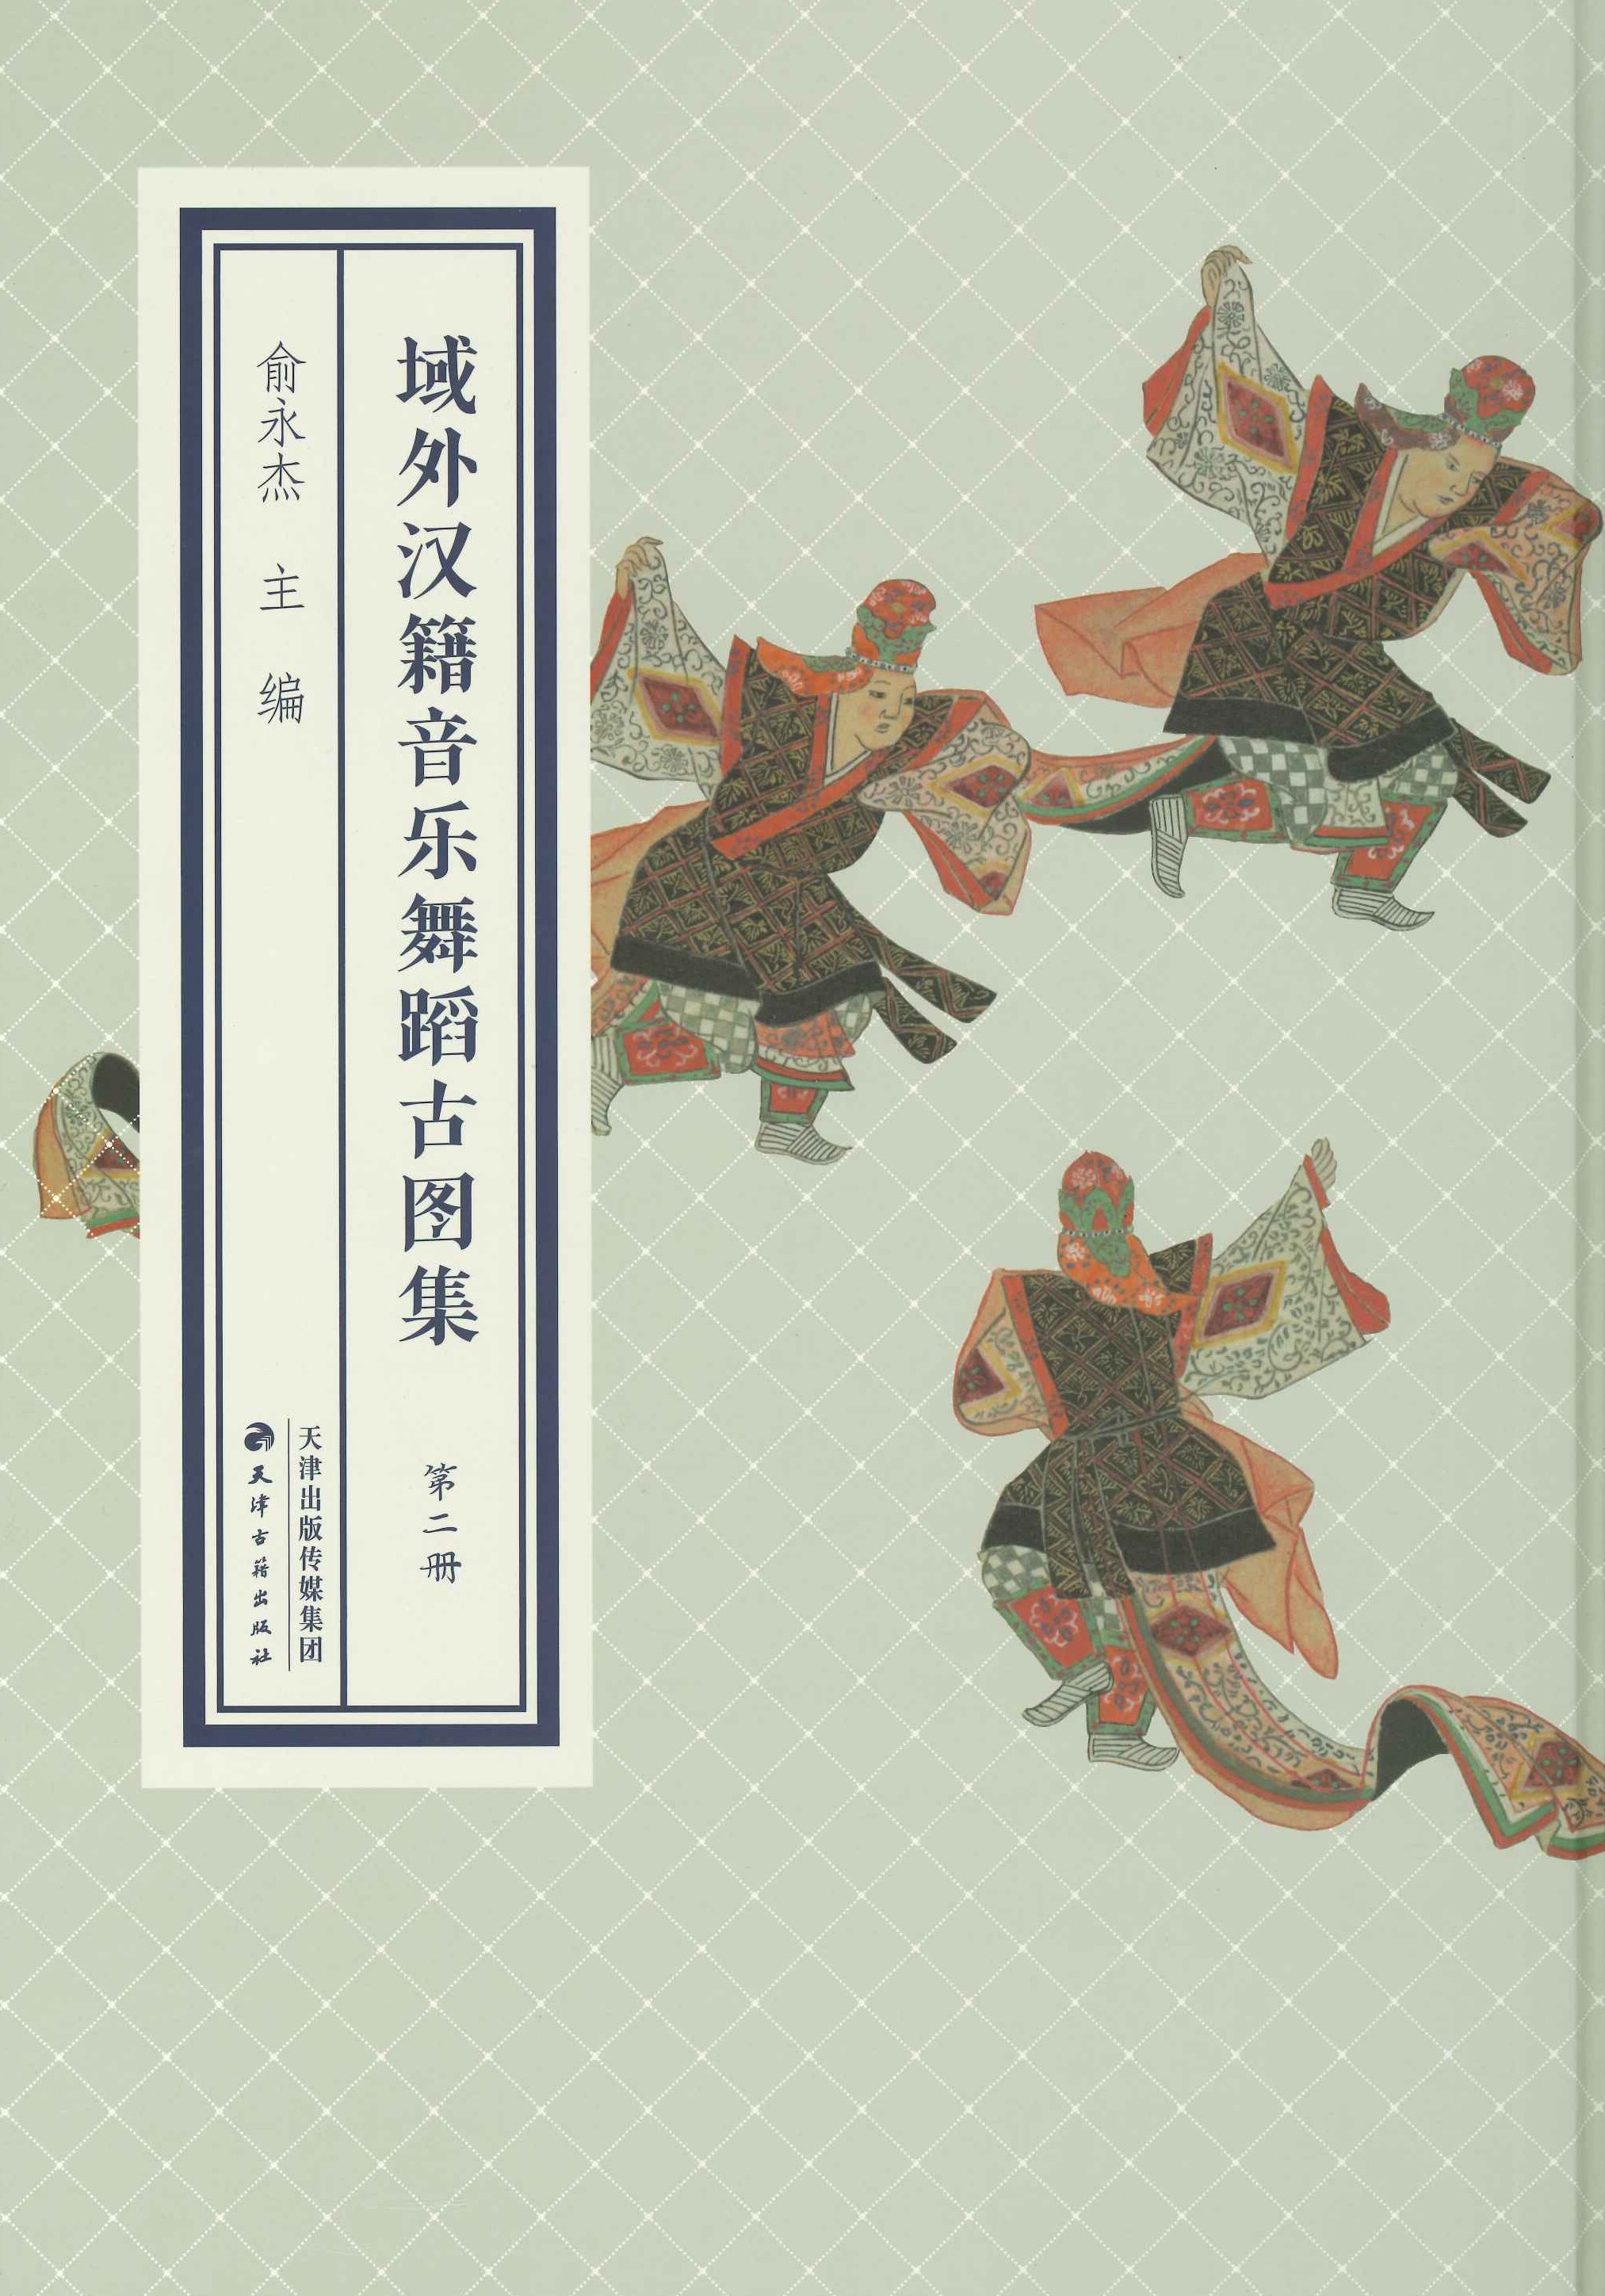 域外汉籍音乐舞蹈古图集(全11)